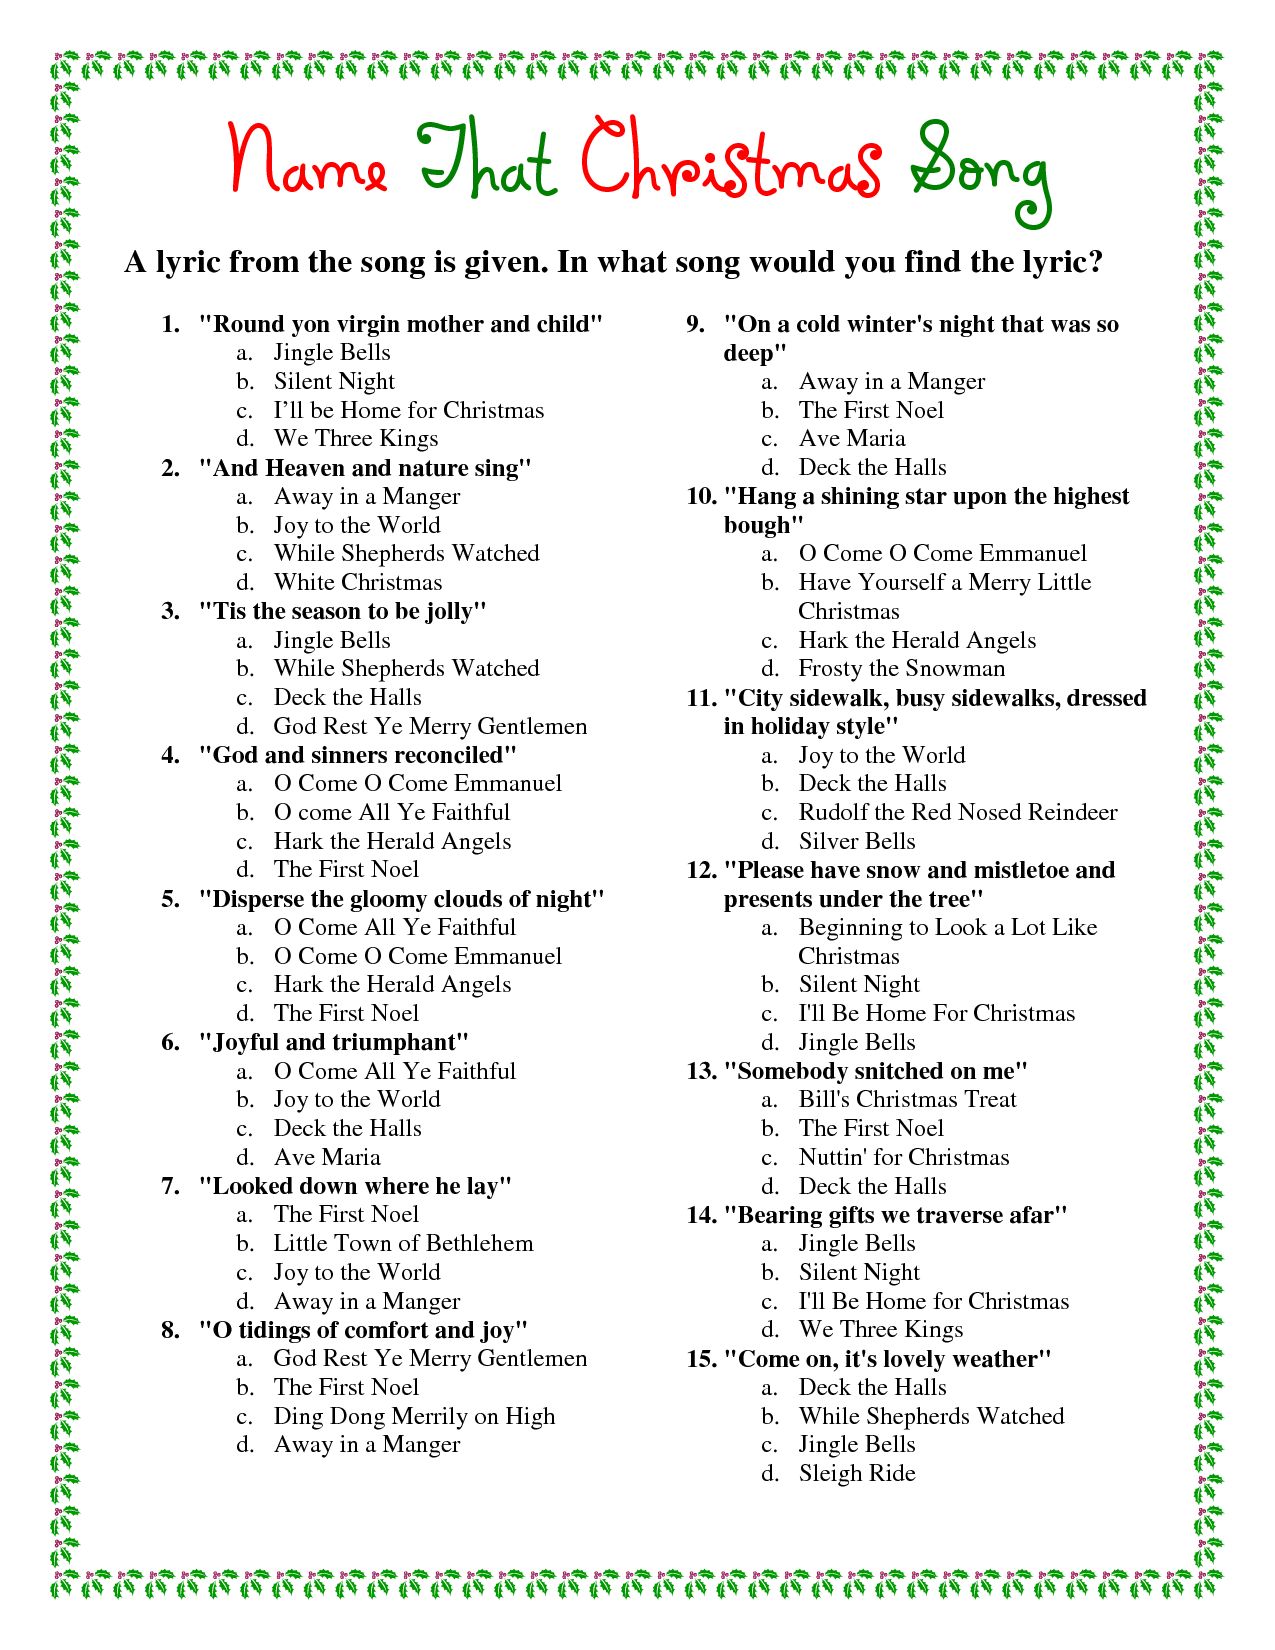 Printable Christmas Trivia Games